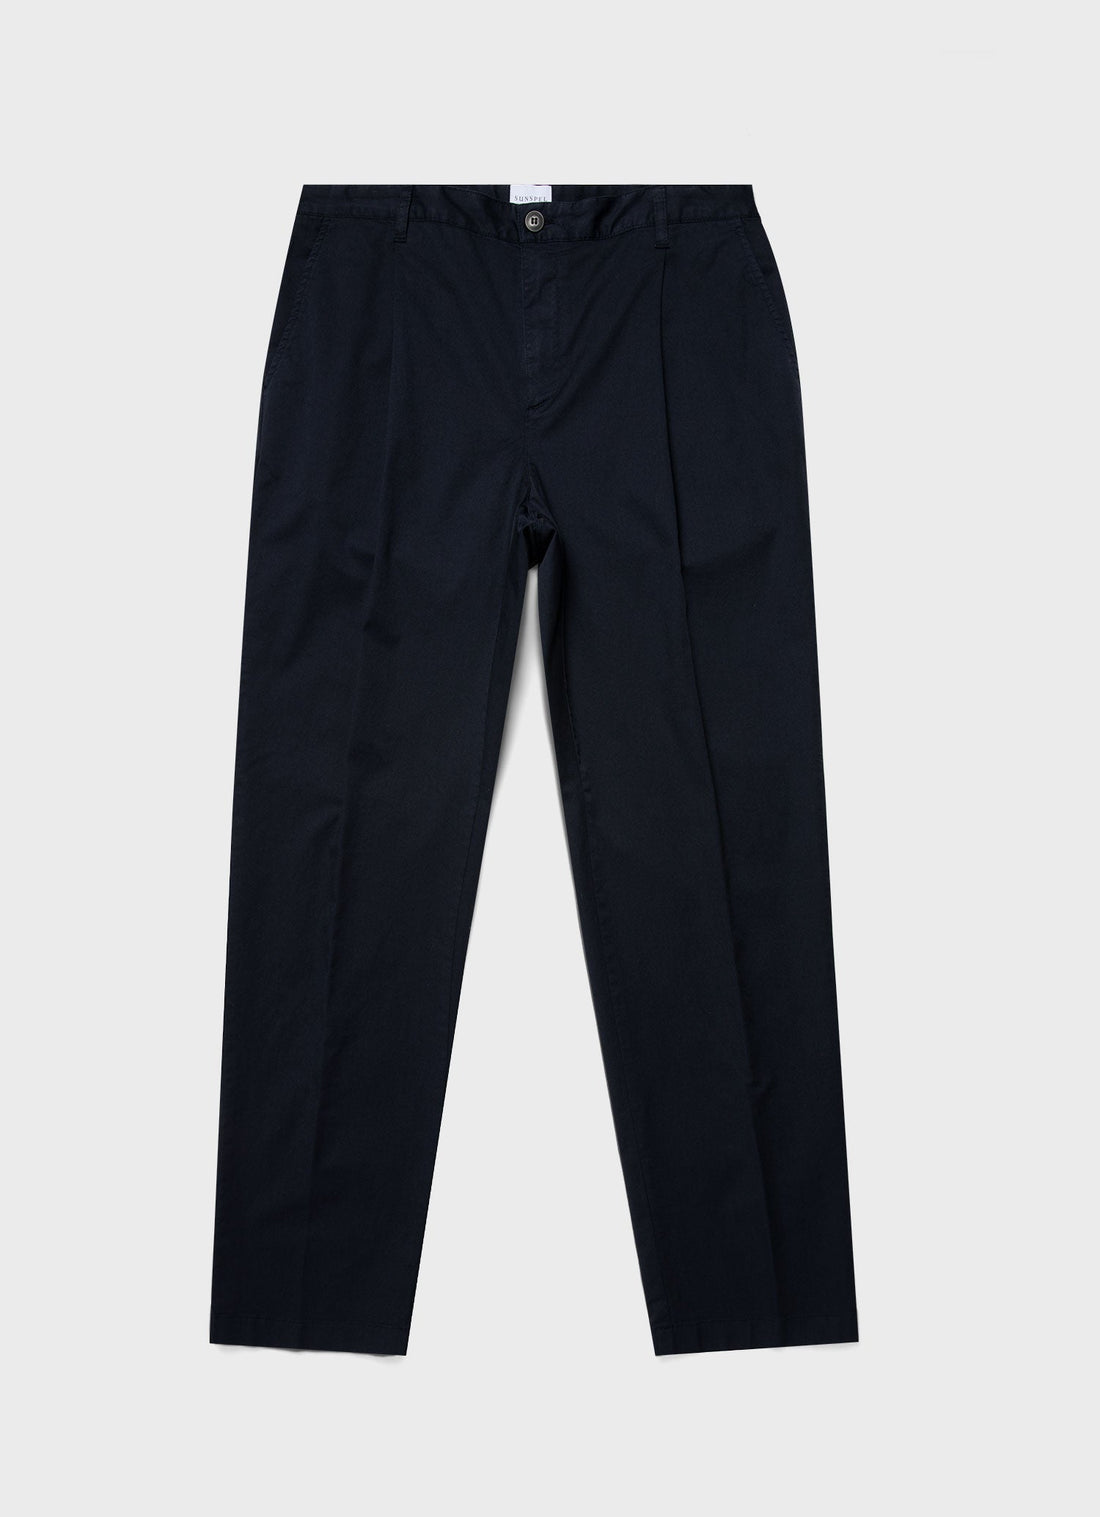 Style Spot Mens Everpress Trouser Formal Pants Premium Material